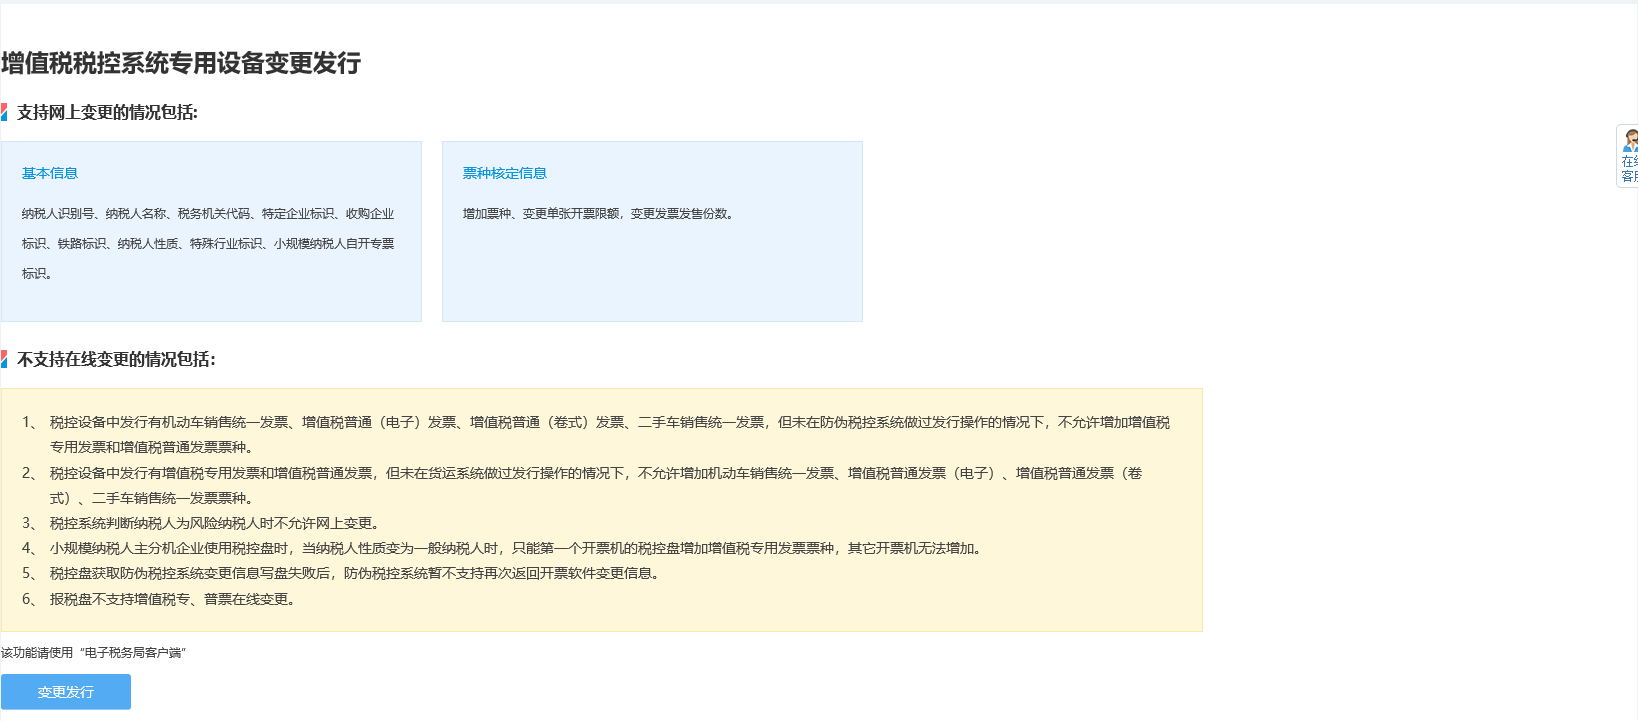 河南省电子税务局增值税税控系统专用设备变更发行首页